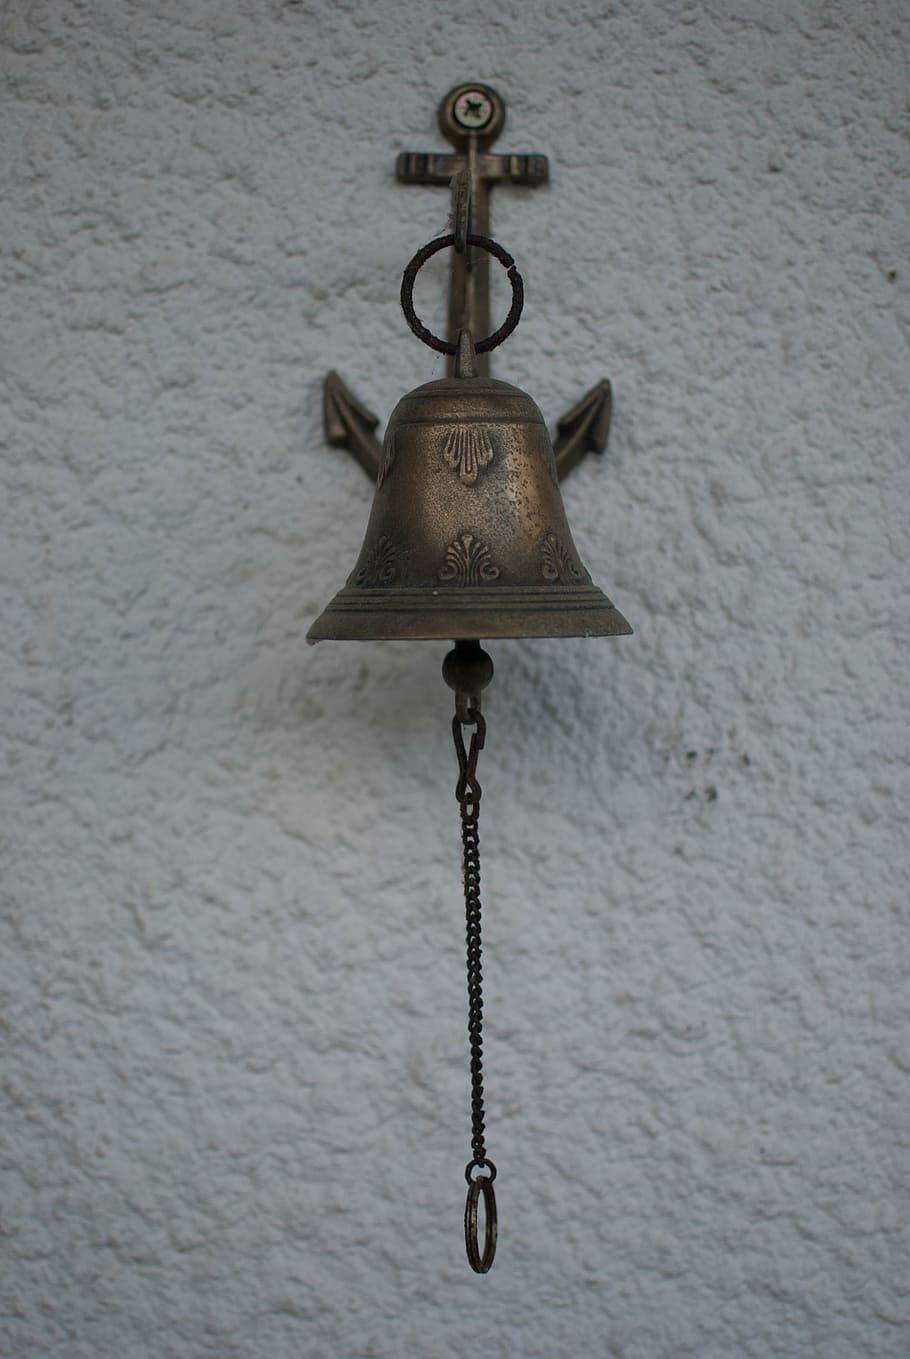 campana, cobre, colgante, metal, pared - característica de construcción, no hay gente, cadena, primer plano, adentro, antiguo